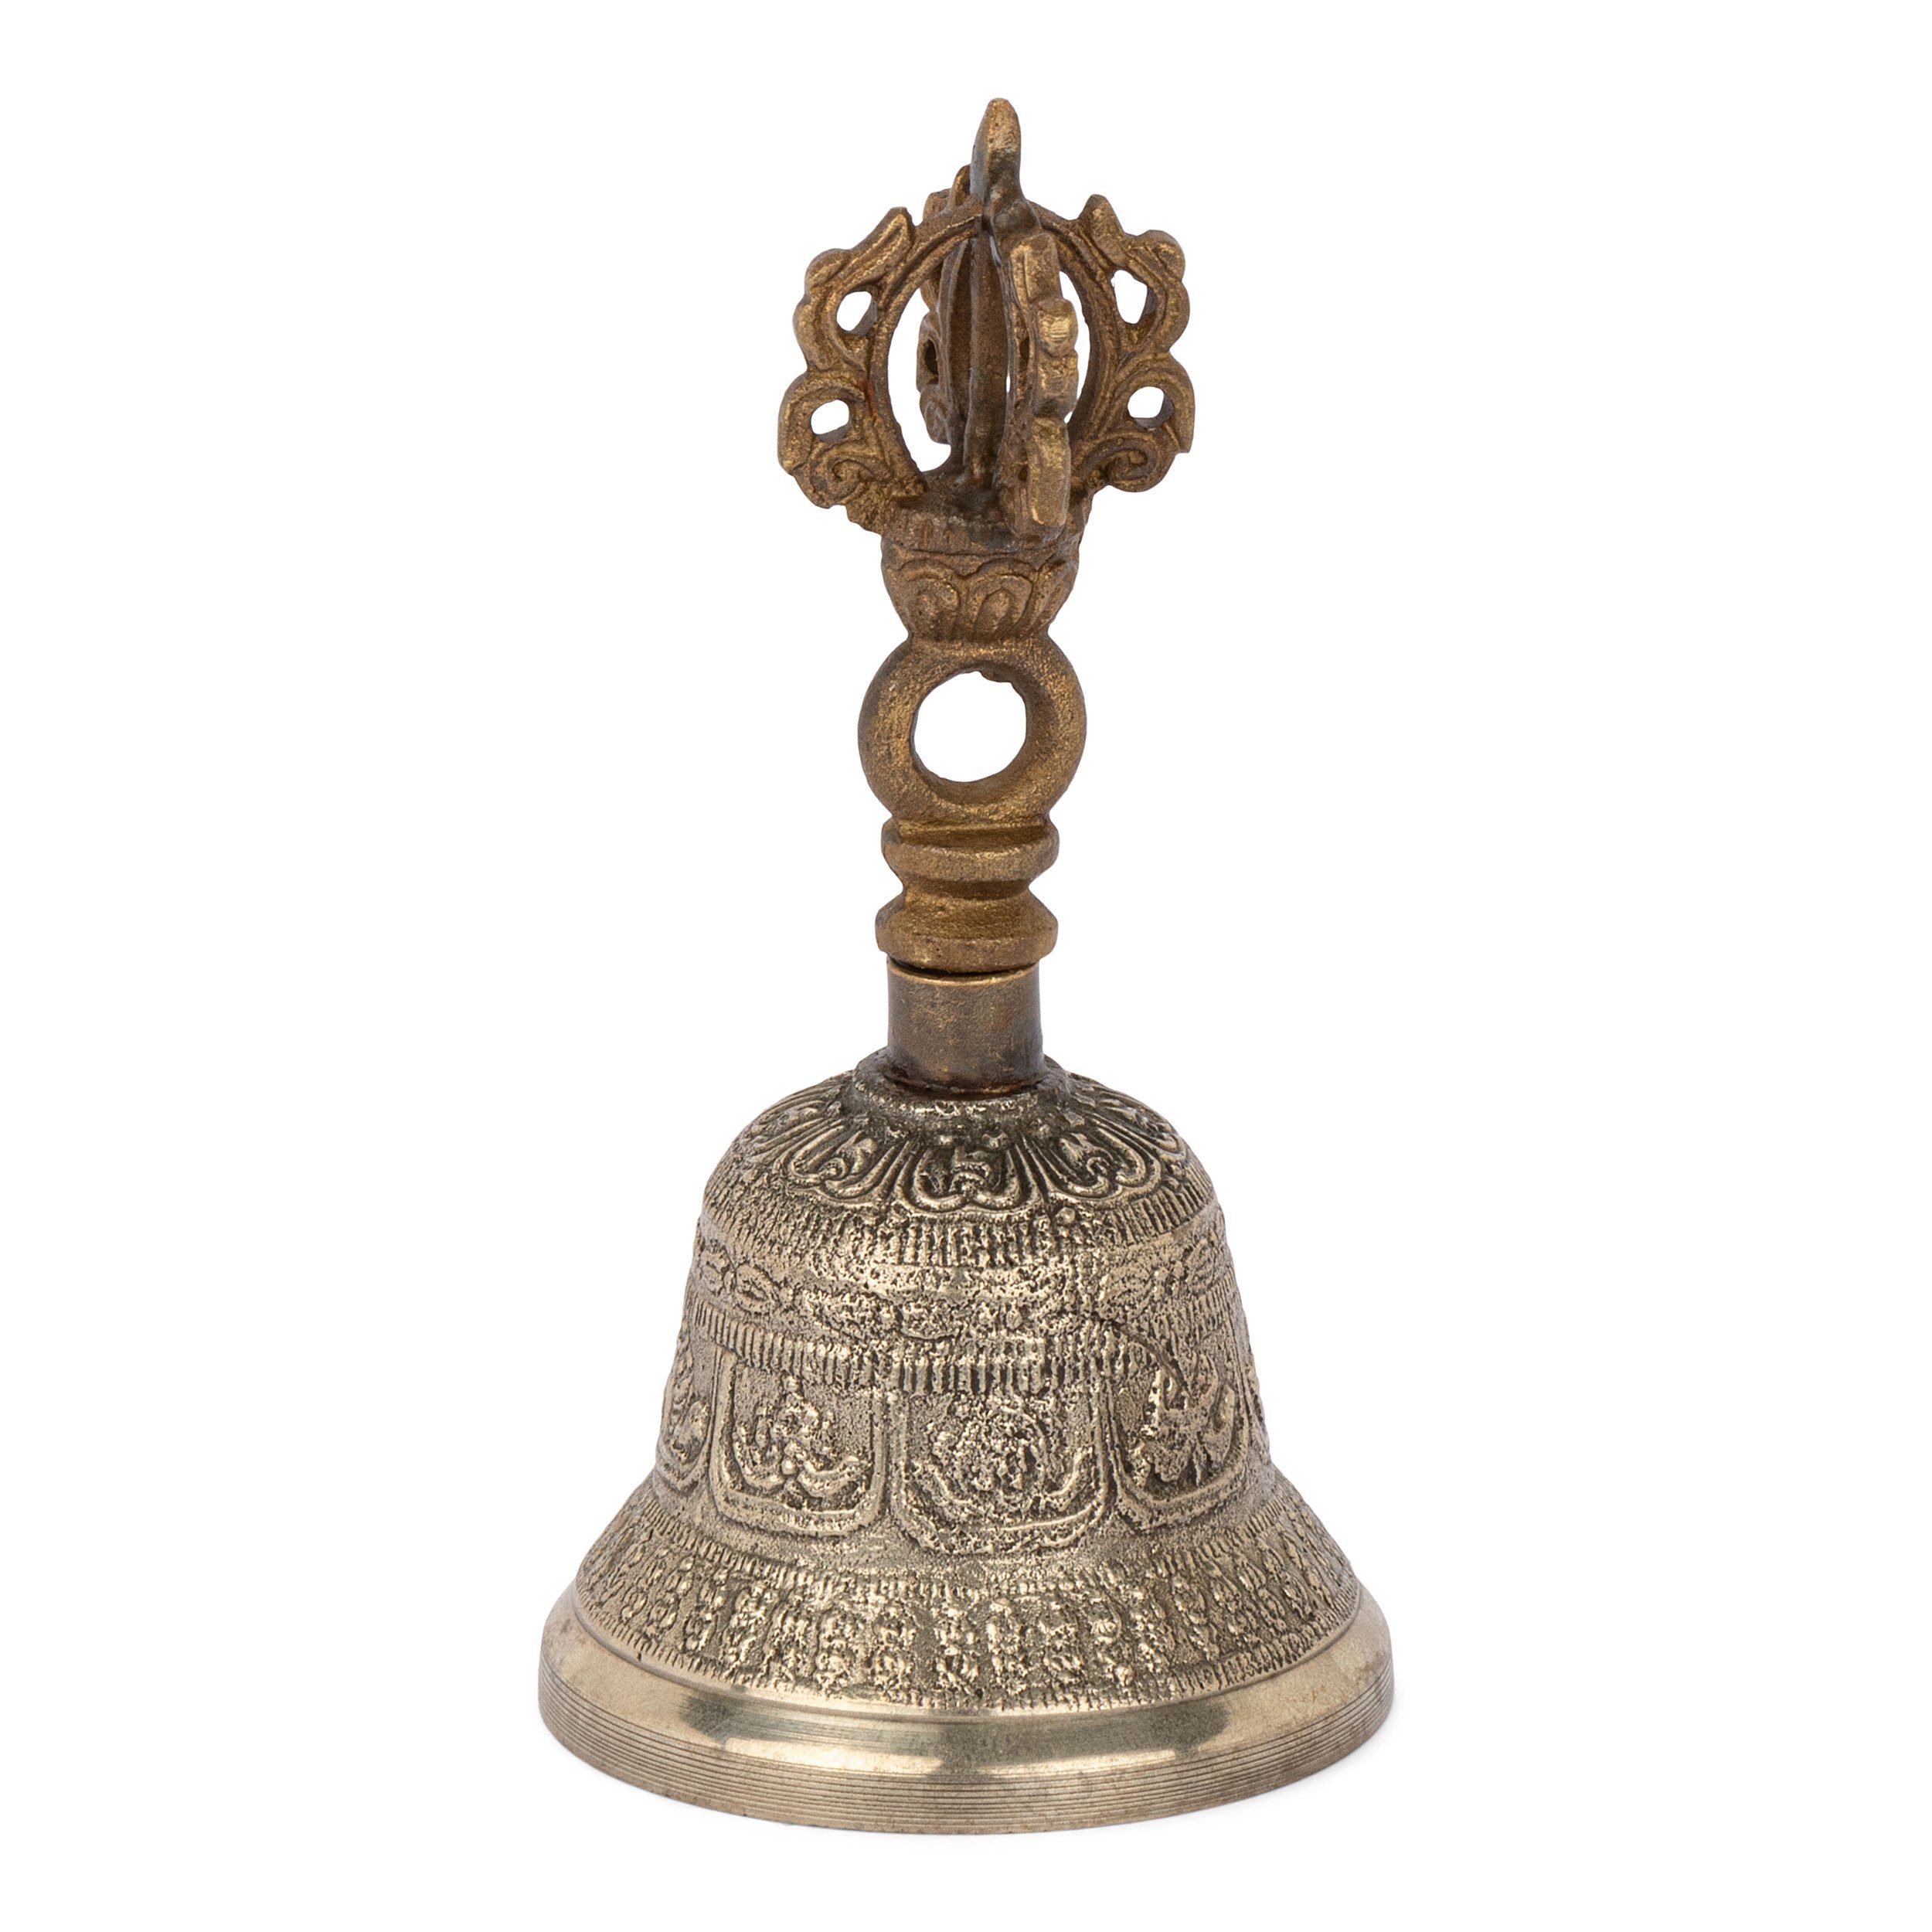 11cm Glocke Griff im mit Ritualgegenstand Dekofigur Dorje Bu NKlaus